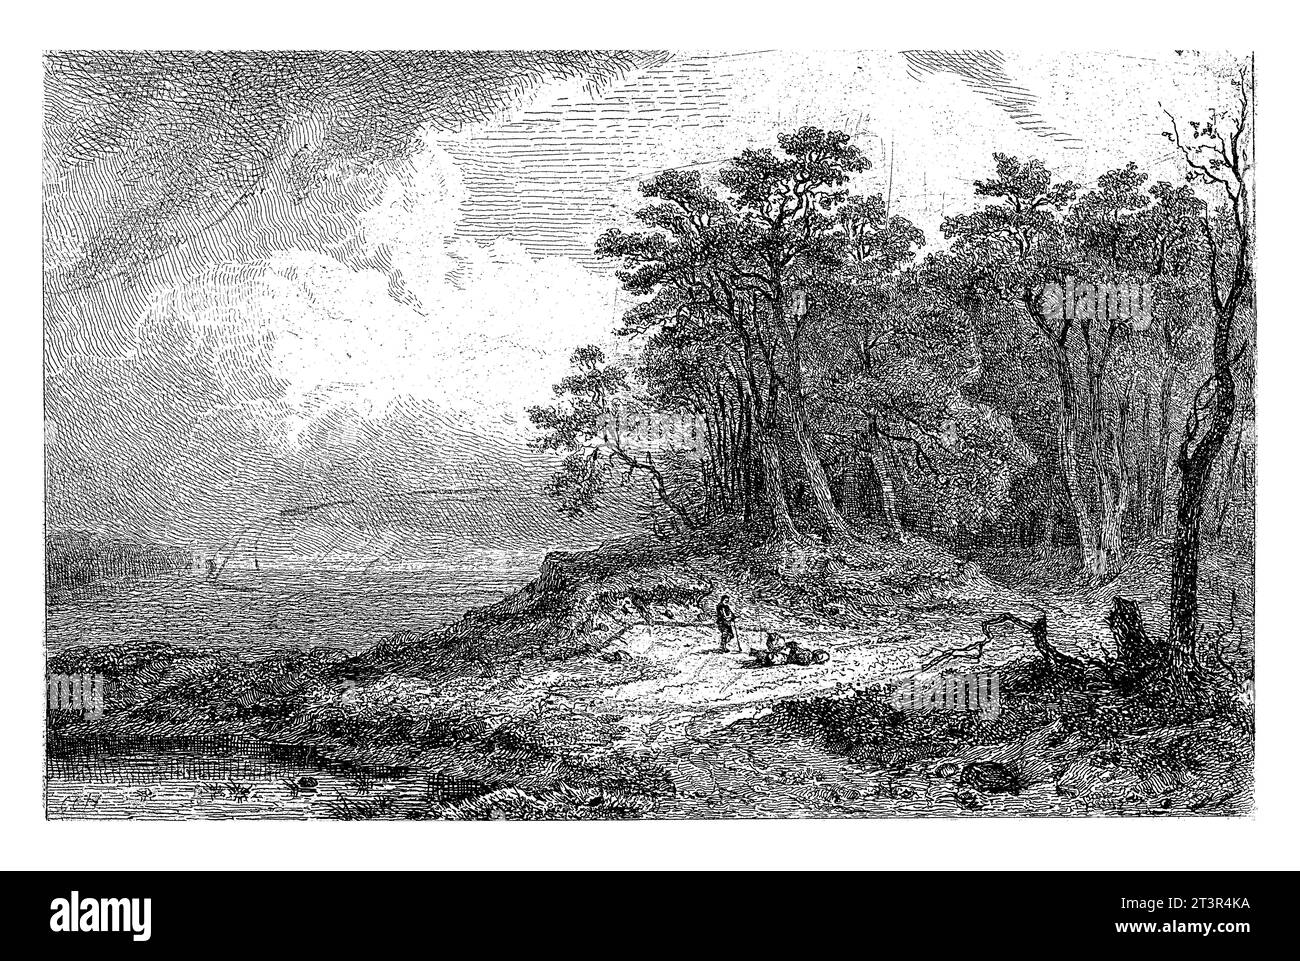 Paesaggio con pastore, Constantinus Cornelis Huysmans, 1820 - 1886 paesaggio boschivo con un pastore con bastone e pecore. A sinistra c'è un piccolo lago. Foto Stock